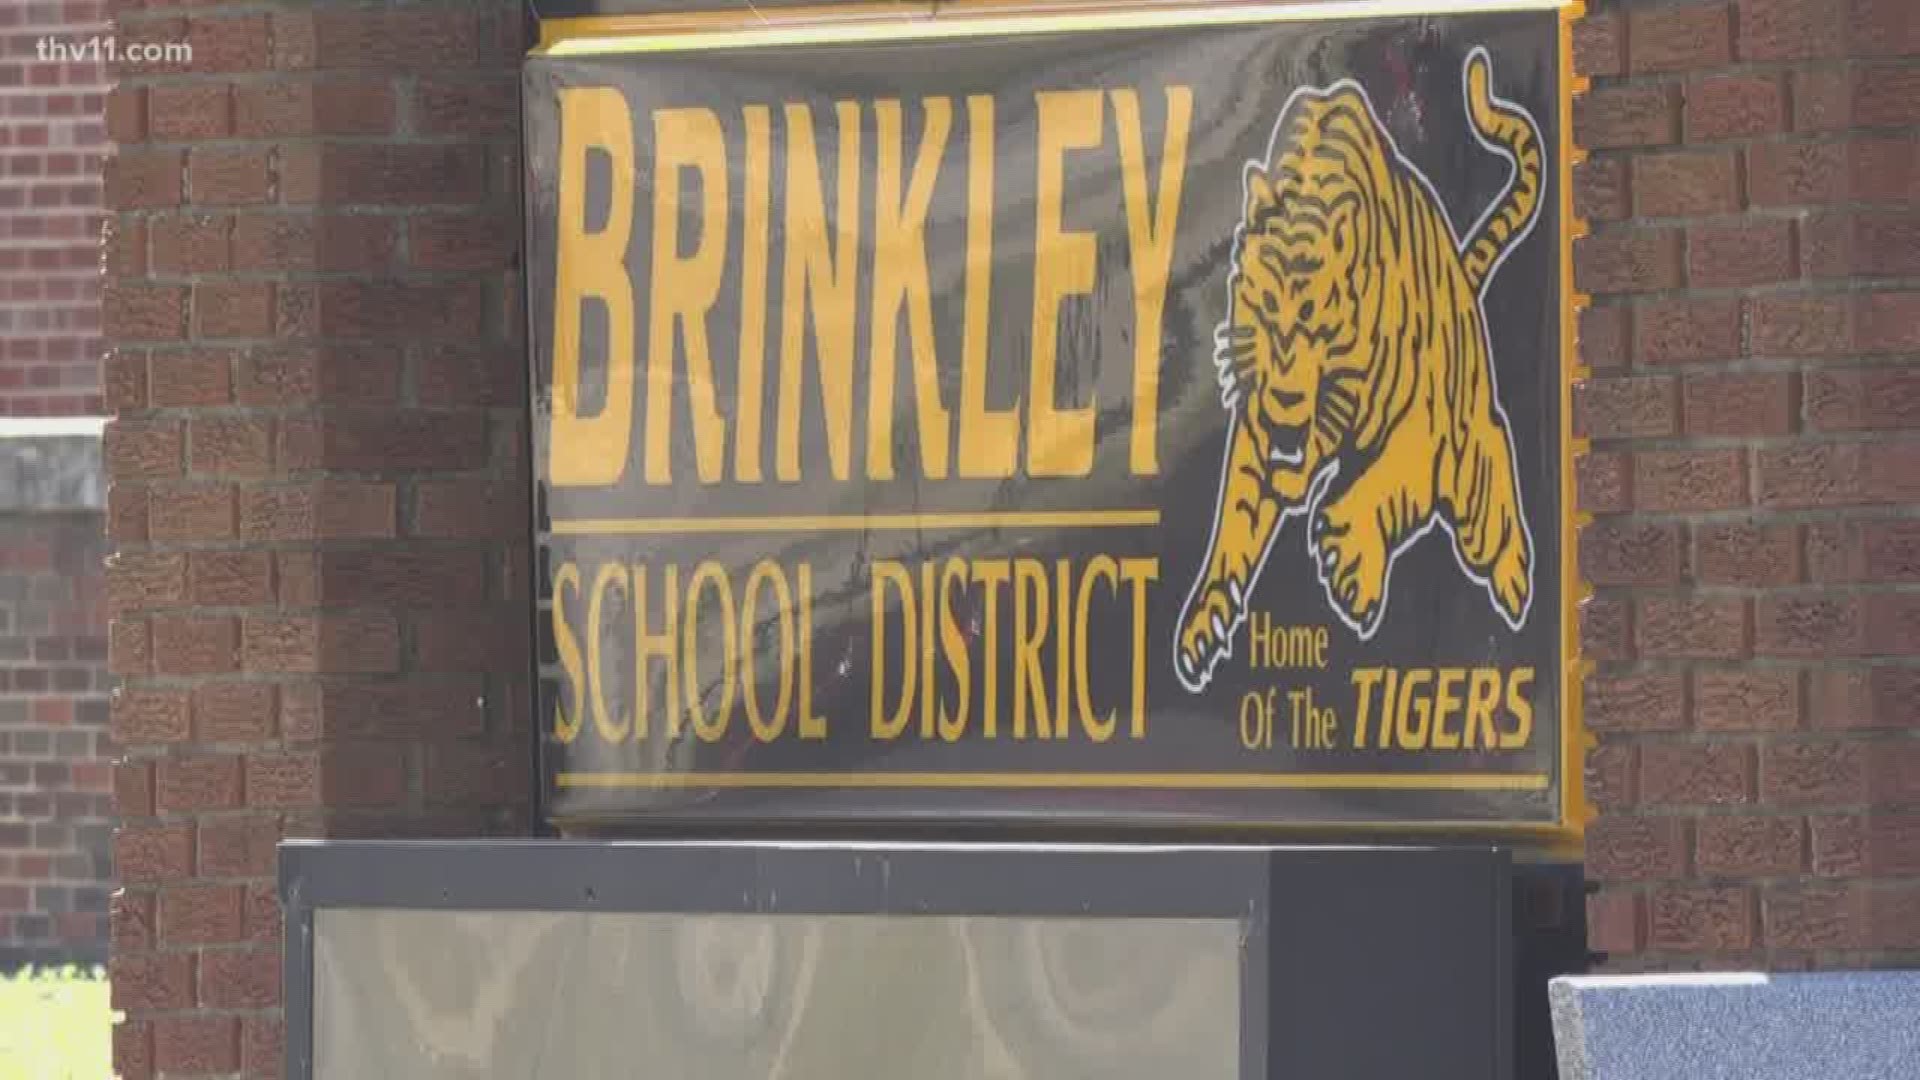 Brinkley School District suing termite company